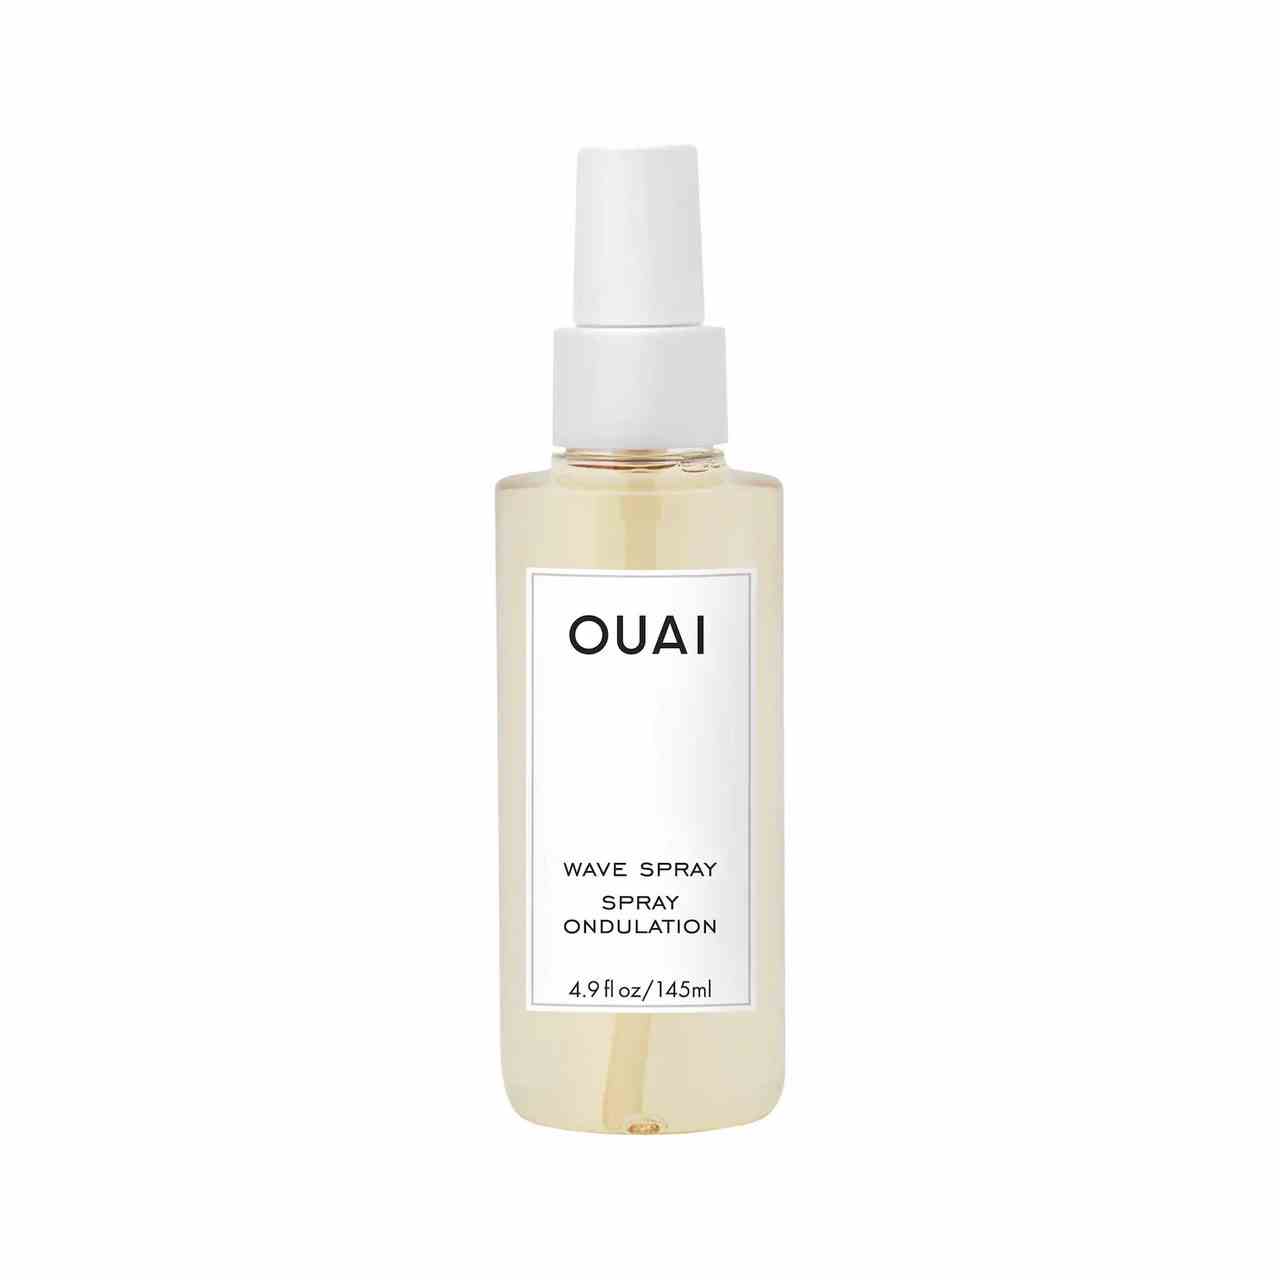 Ouai Wave Spray transparente Sprühflasche mit blassgelbem Wellenspray auf weißem Hintergrund